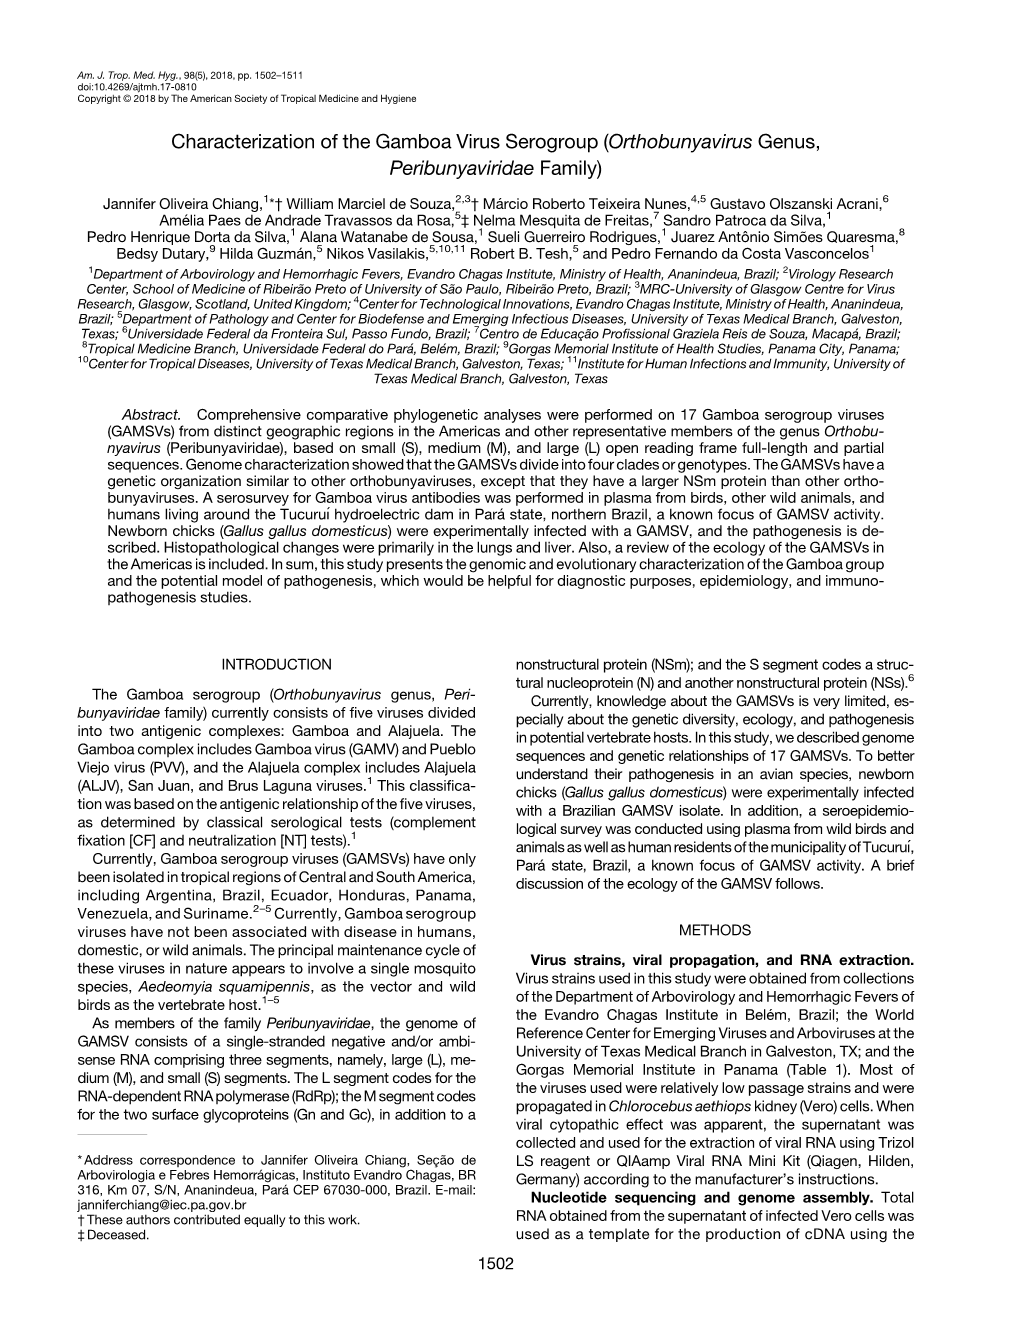 Characterization of the Gamboa Virus Serogroup (Orthobunyavirus Genus, Peribunyaviridae Family)